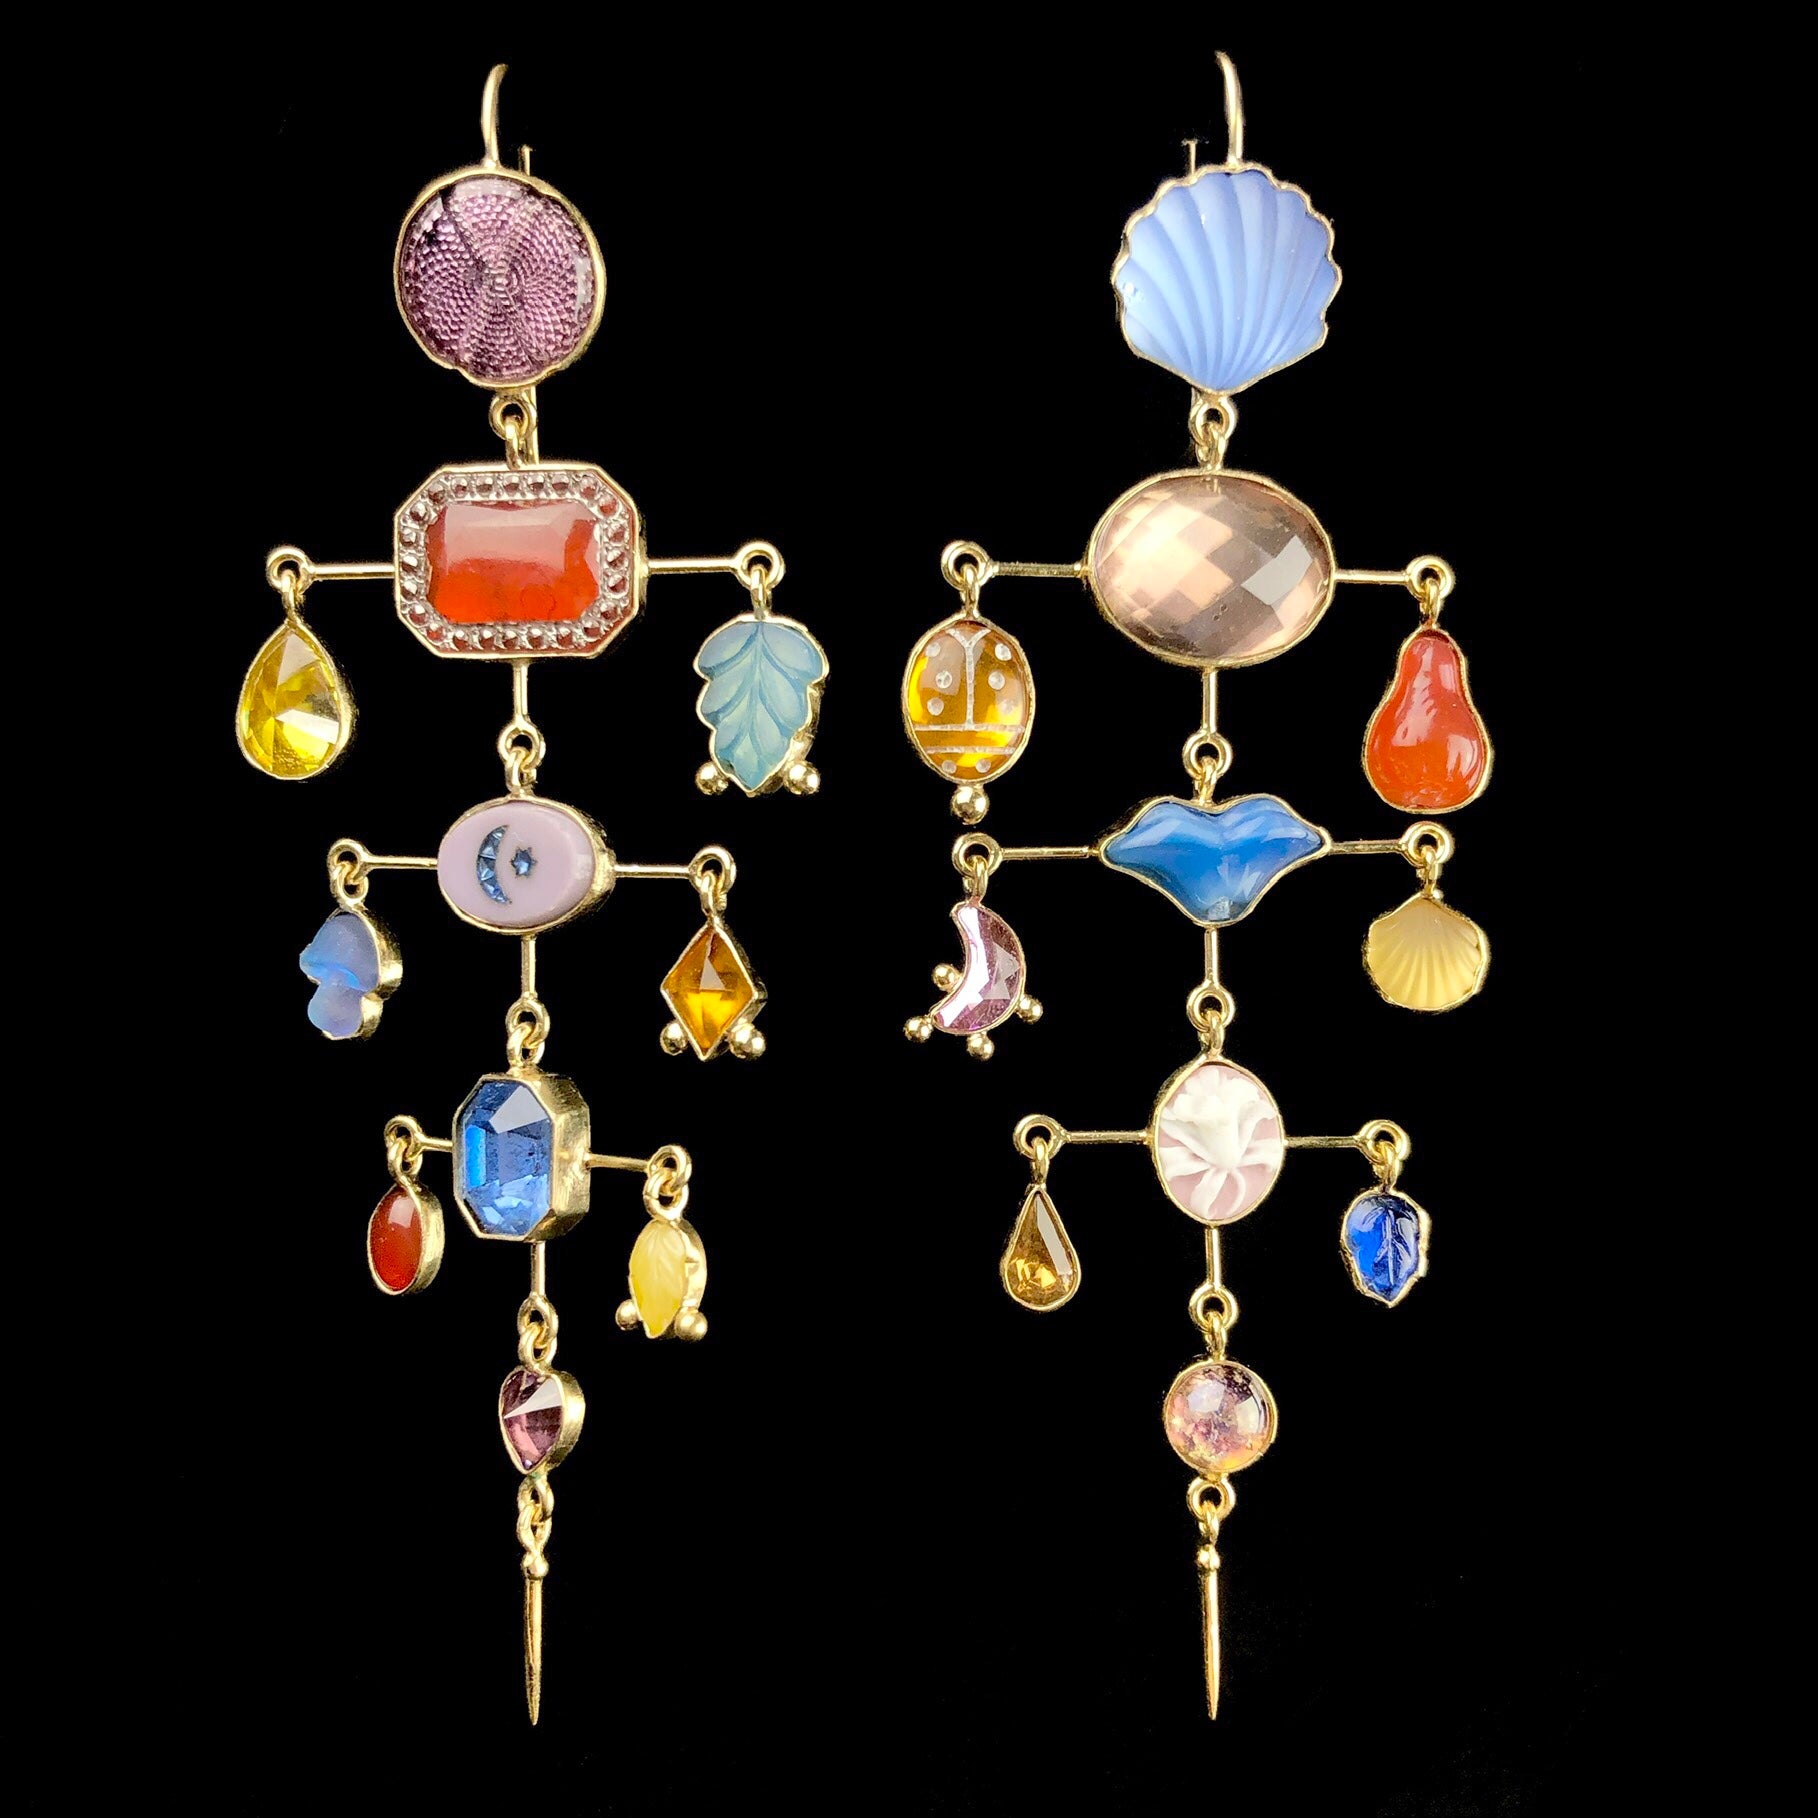 Balanced Victorian Drop Hook Earrings shown side by side